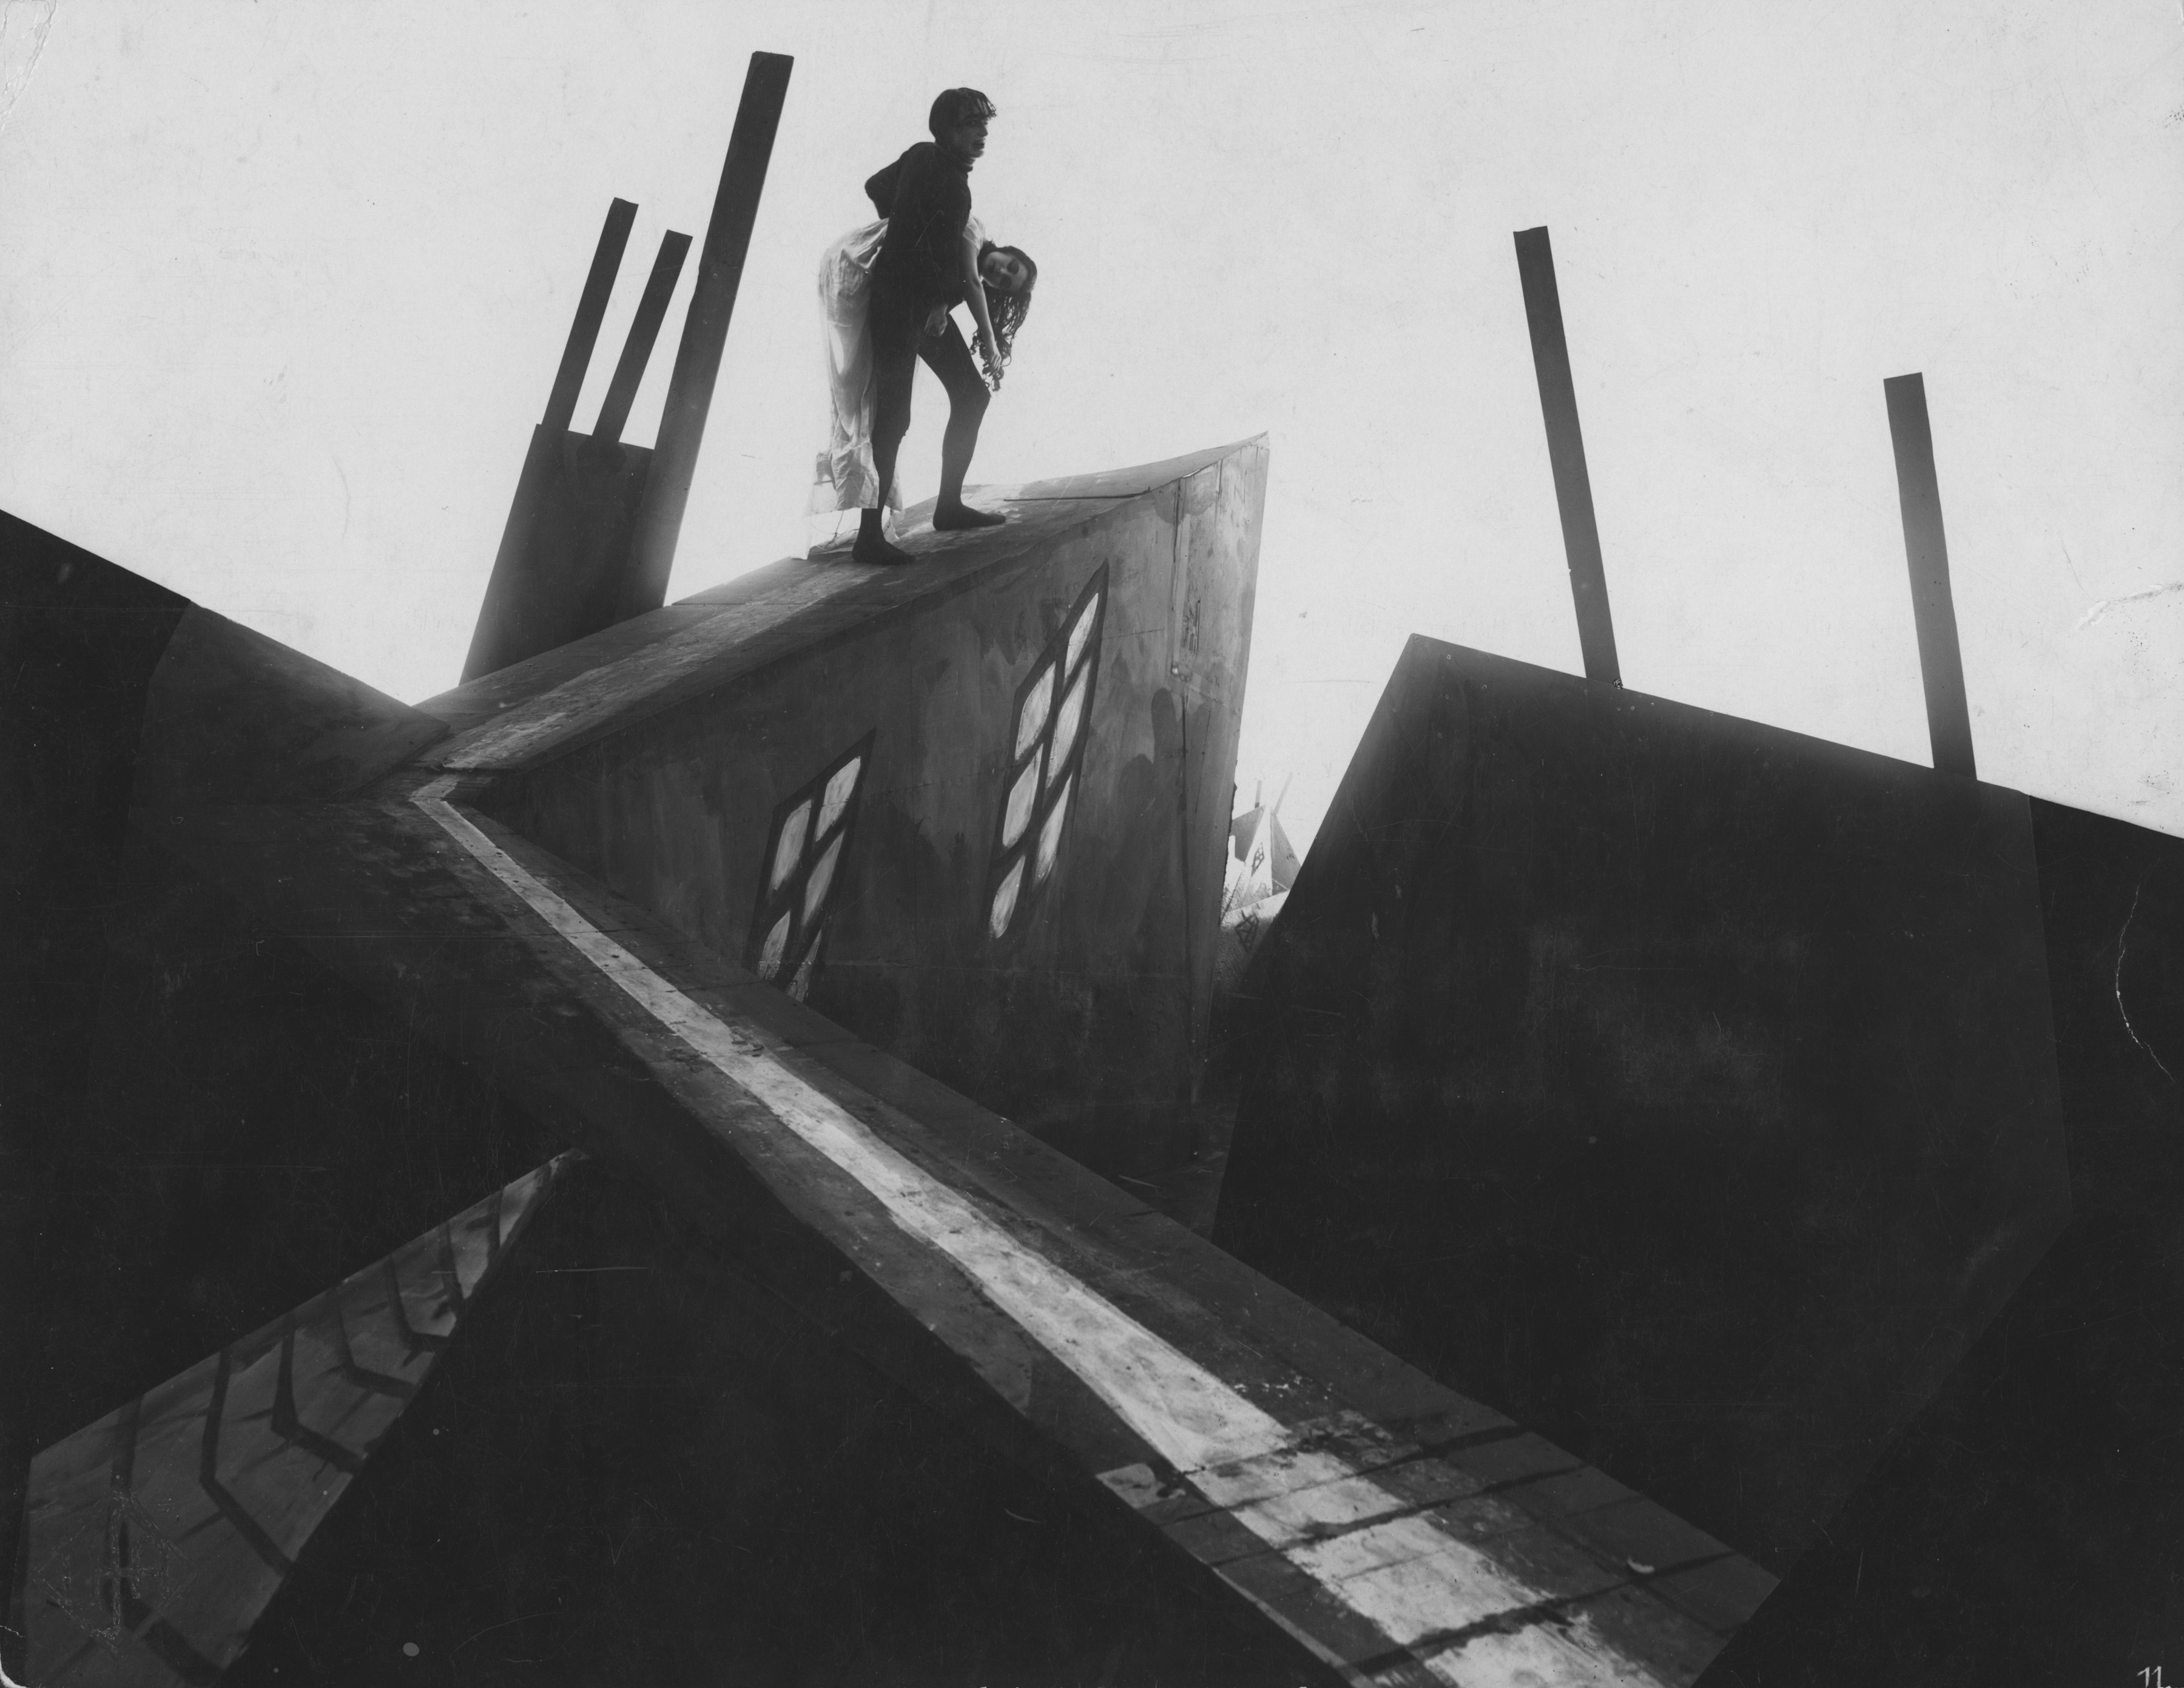 CuadroXCuadro: ‘El gabinete del doctor Caligari’ y el principio del terror